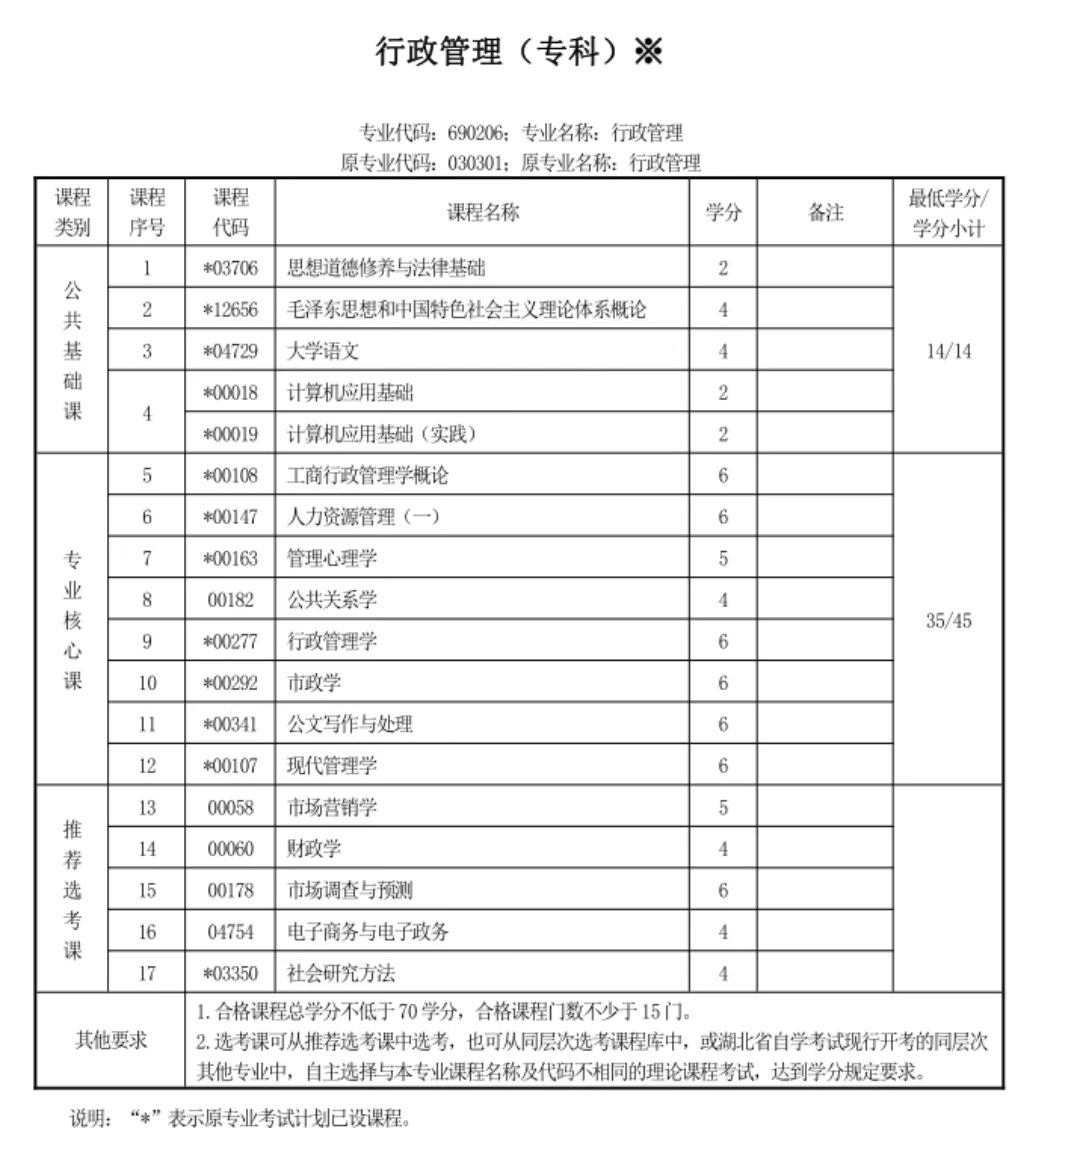 2023年湖北省自考注册报考详细指南 - 知乎